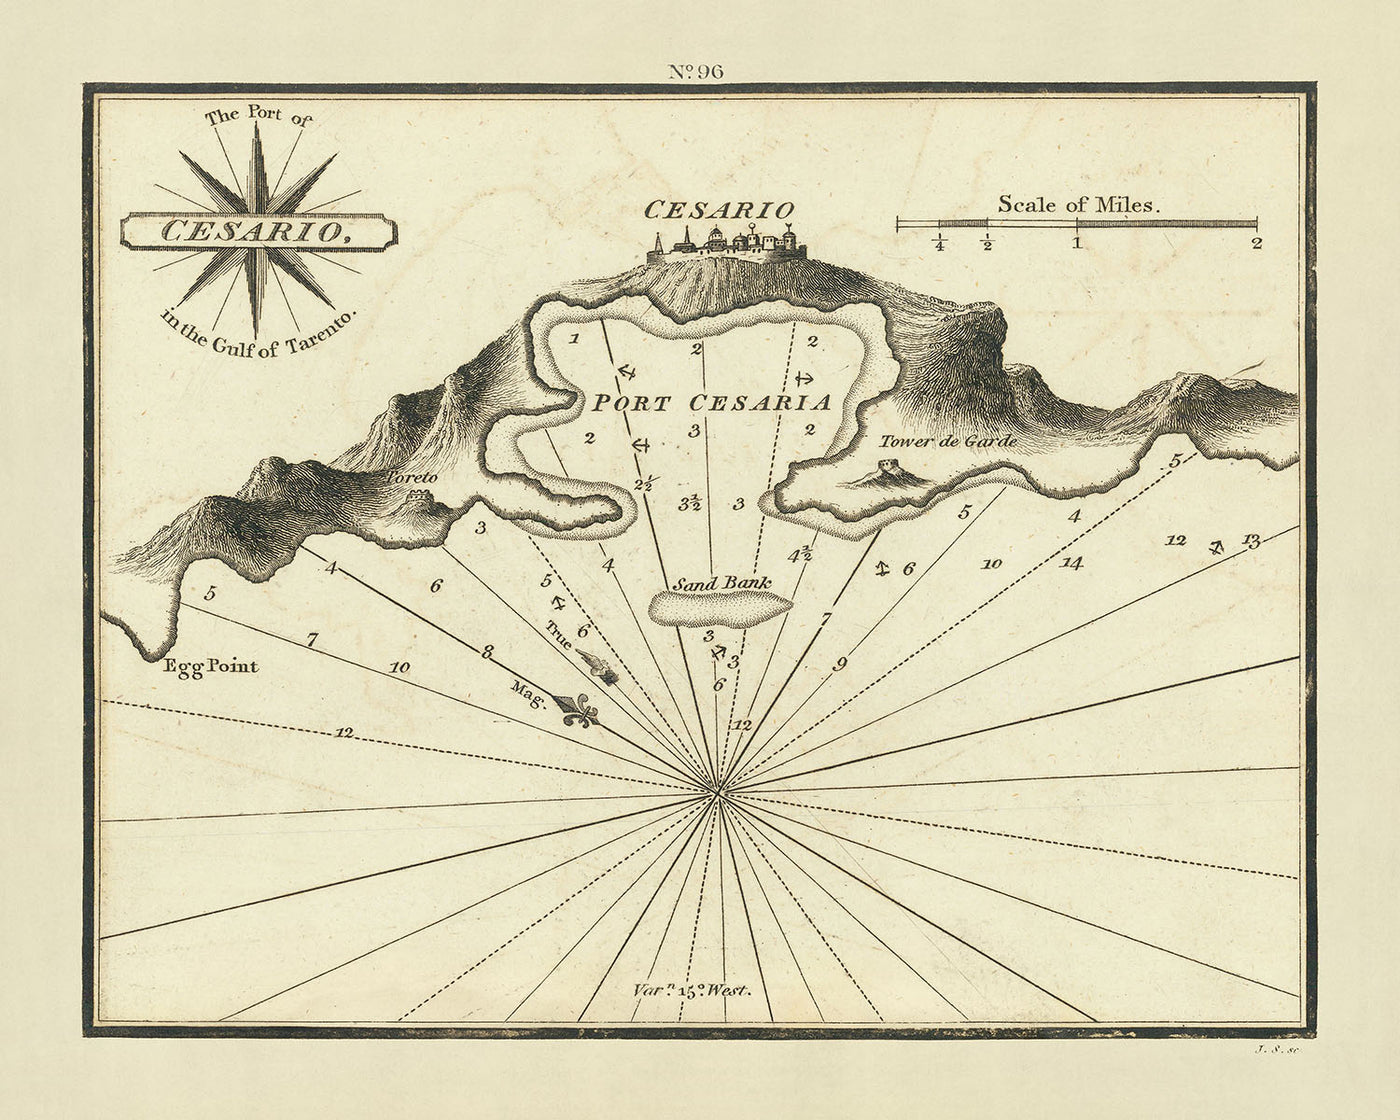 Carta náutica del antiguo puerto de Cesario de Heather, 1802: golfo de Tarento, sondeos, rosa de los vientos